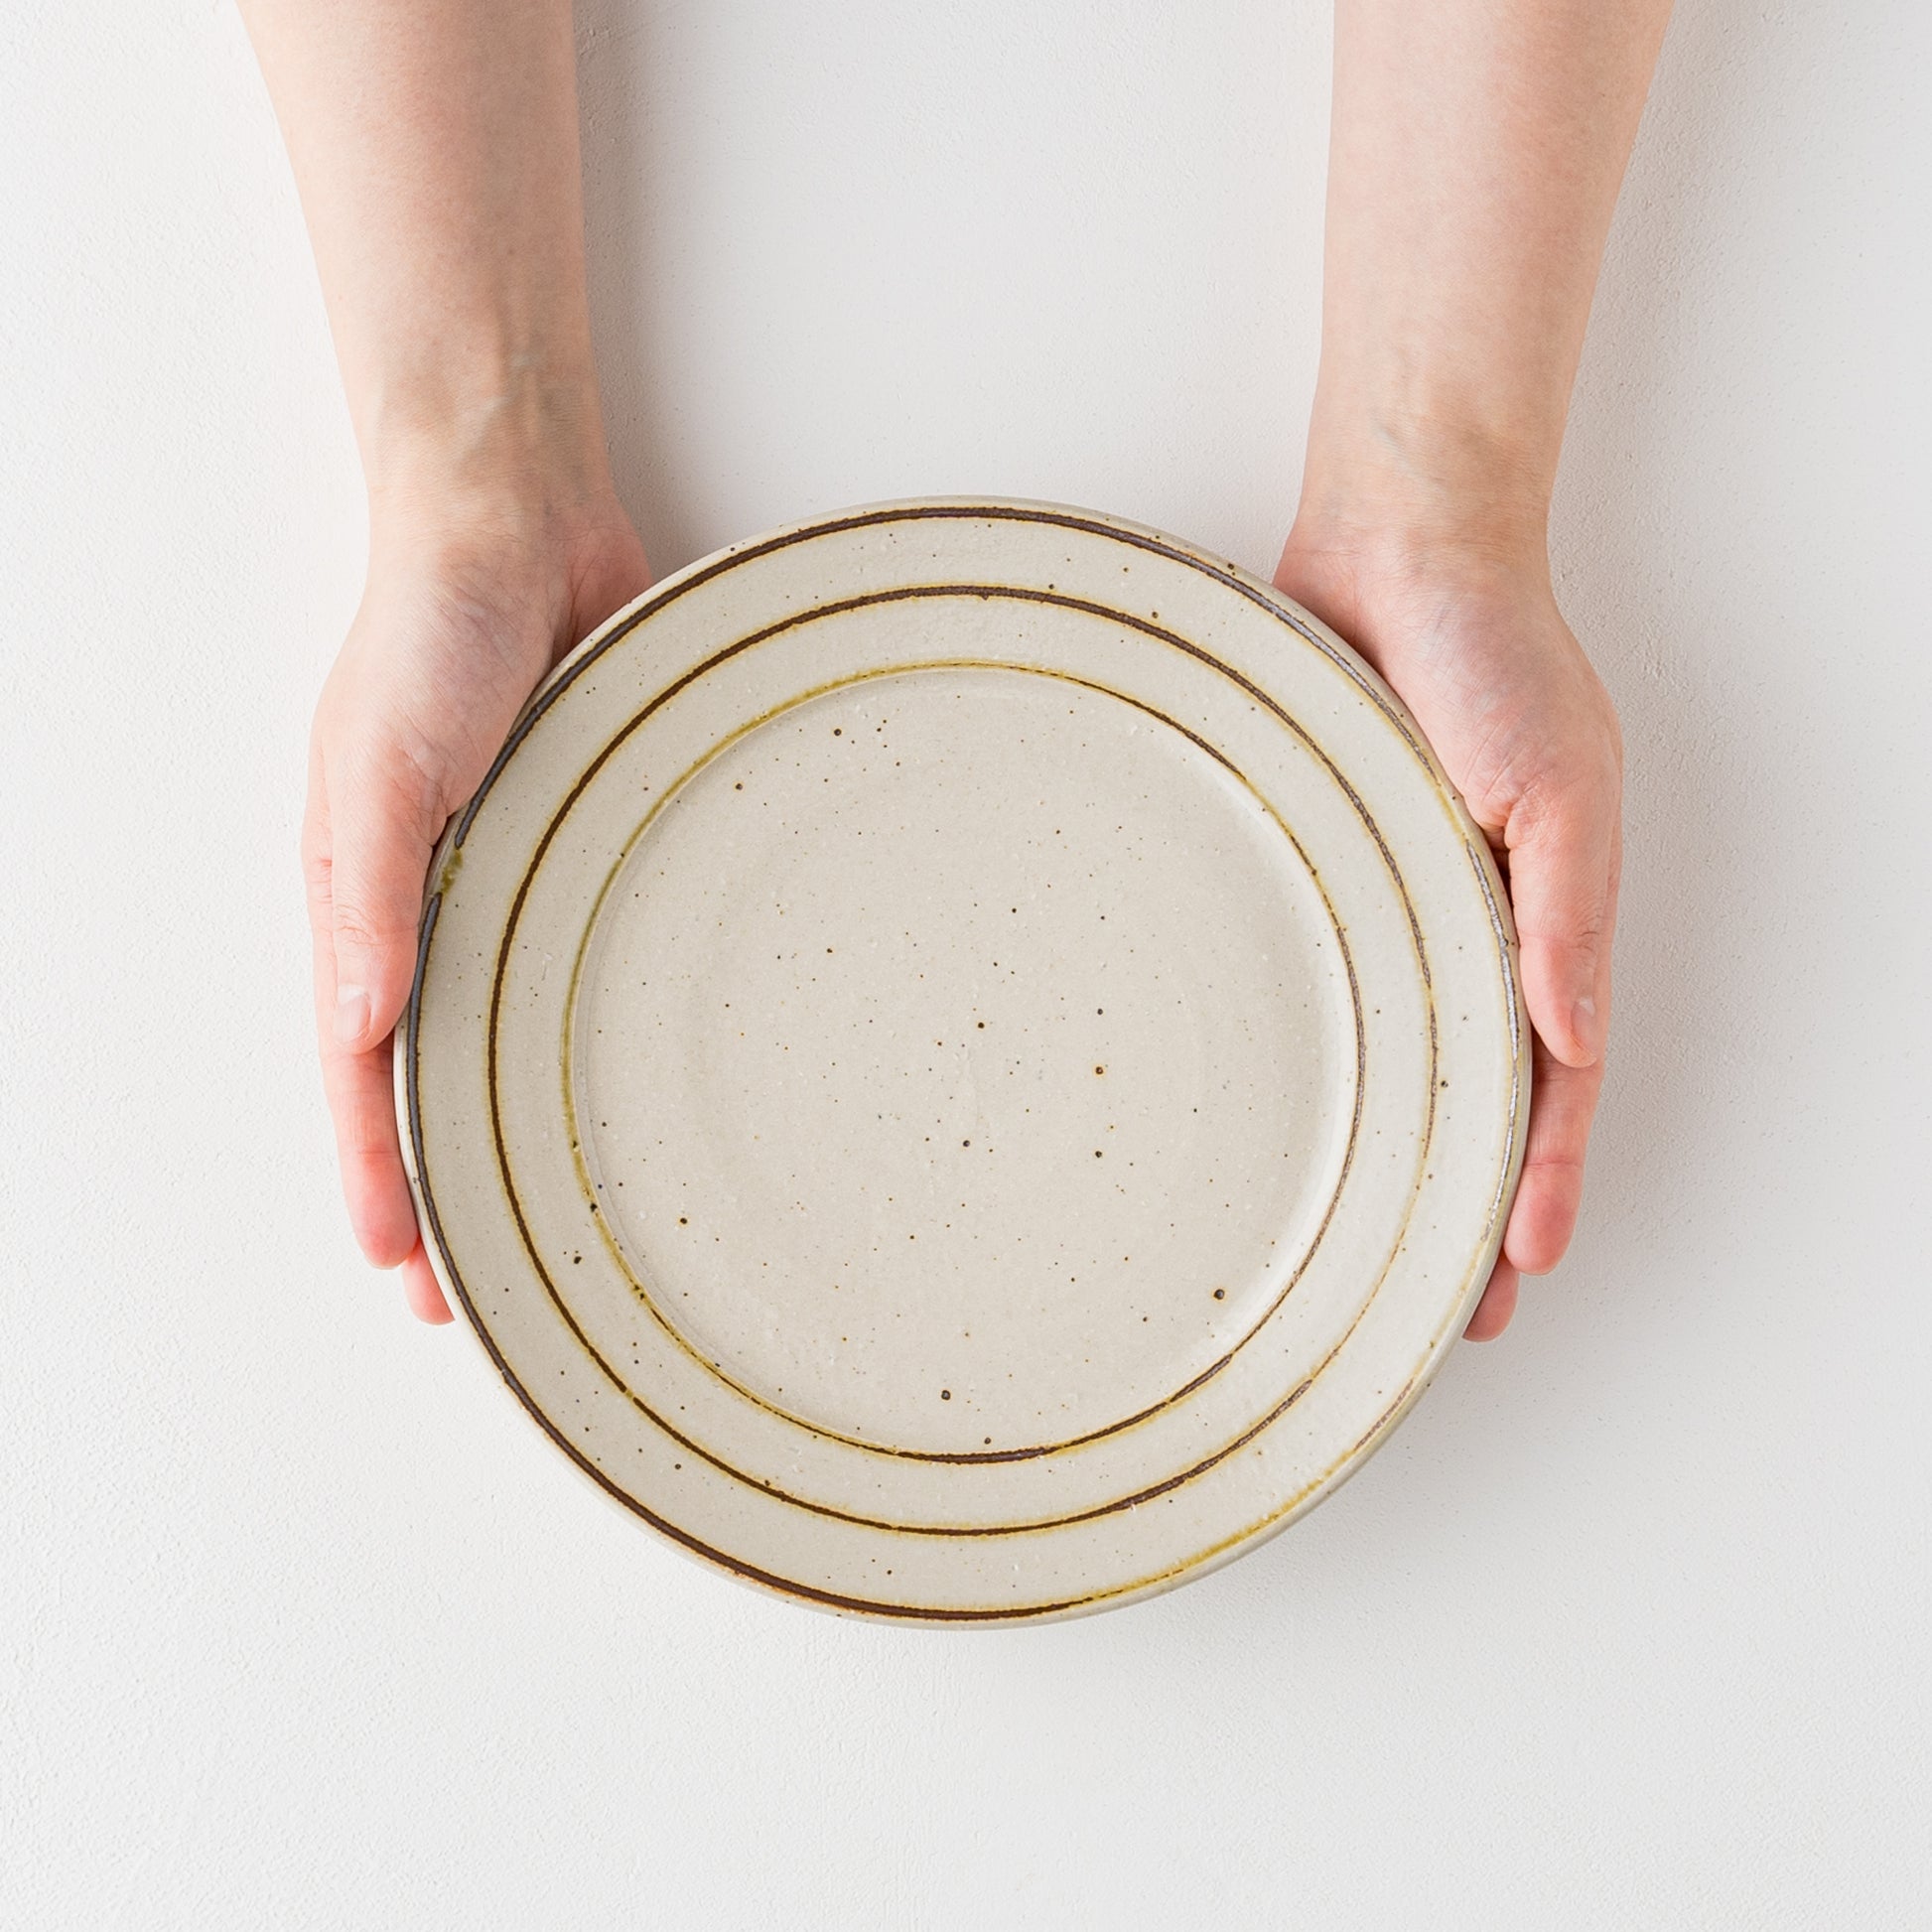 盛り付けたお料理が素敵に映える冨本大輔さんの灰釉鉄絵7寸リム皿